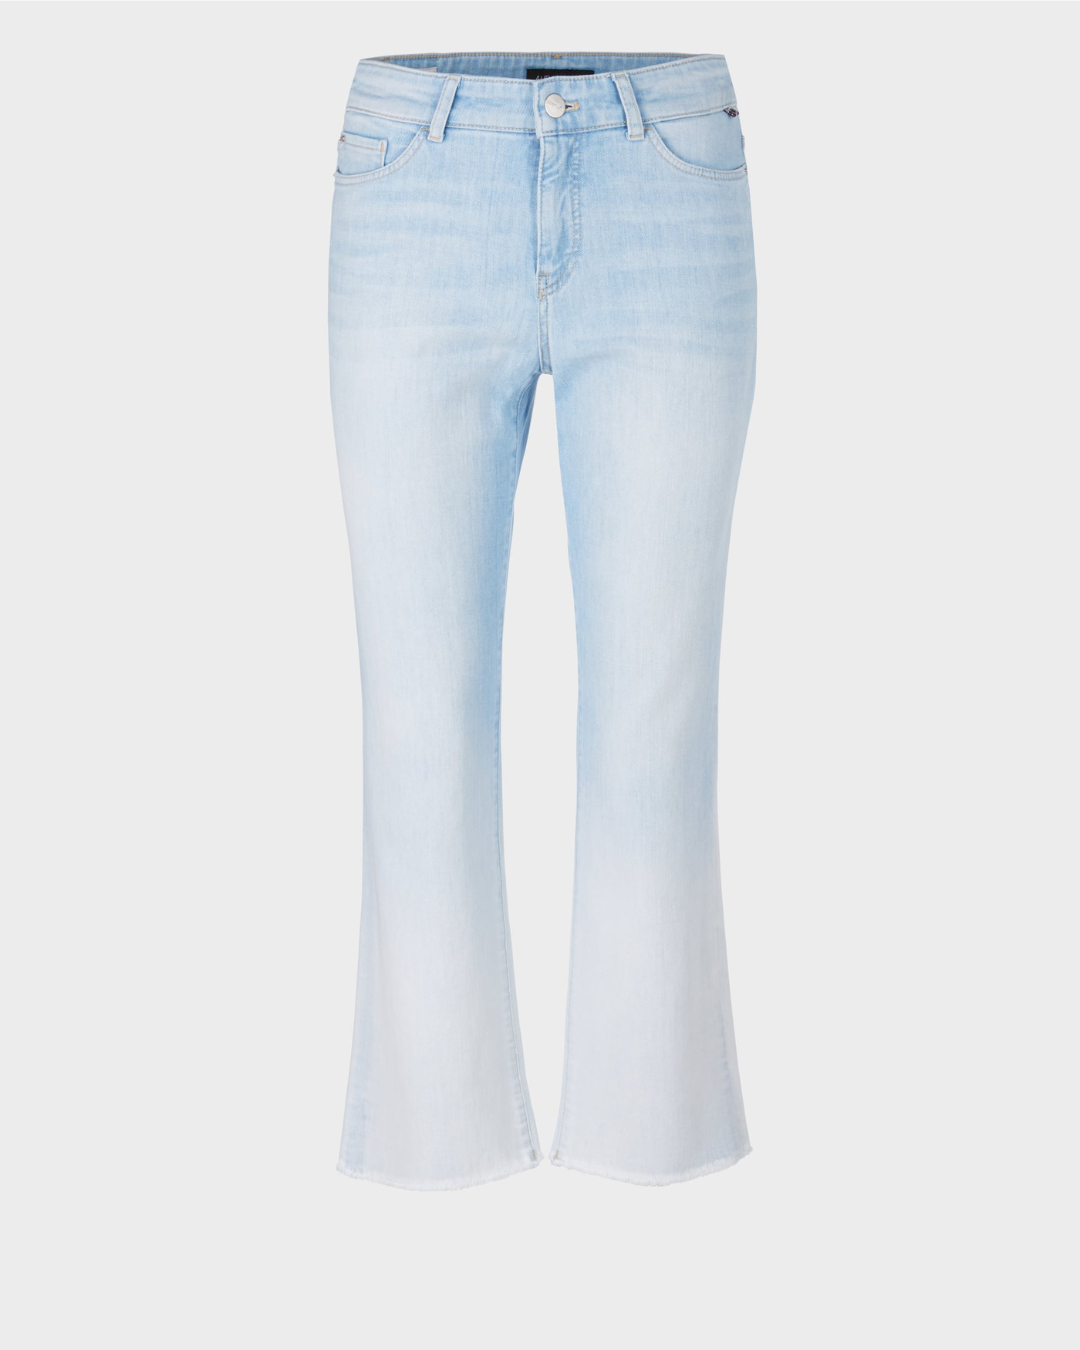 &quot;Rethink Together” jeans - FORLI model